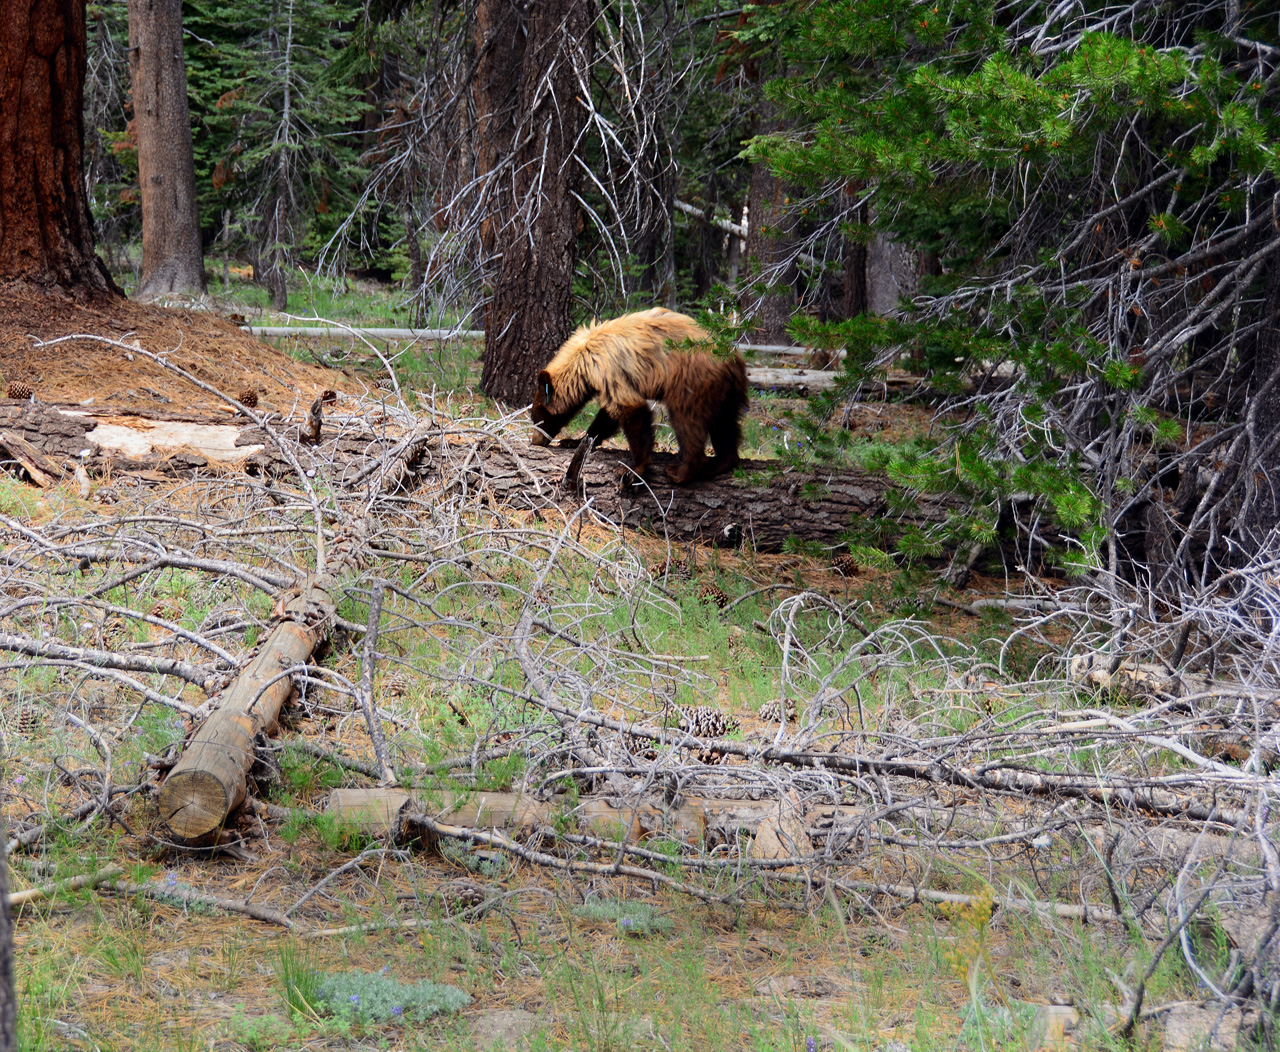 2015-06-30, 046, Yosemite NP, Bear, CA